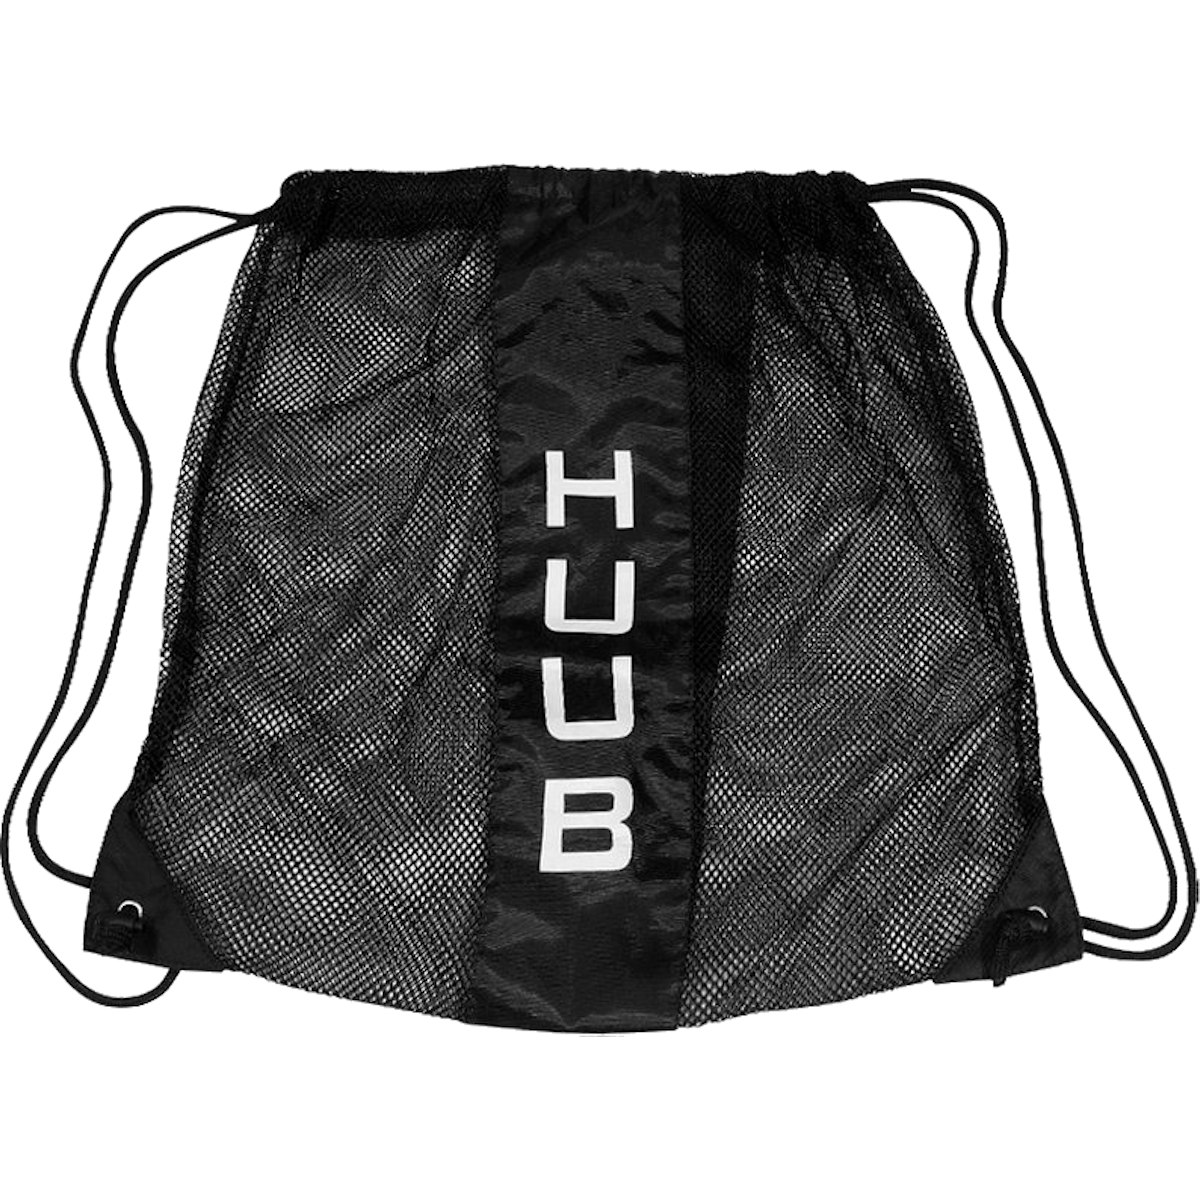 Produktbild von HUUB Design Netztasche - schwarz